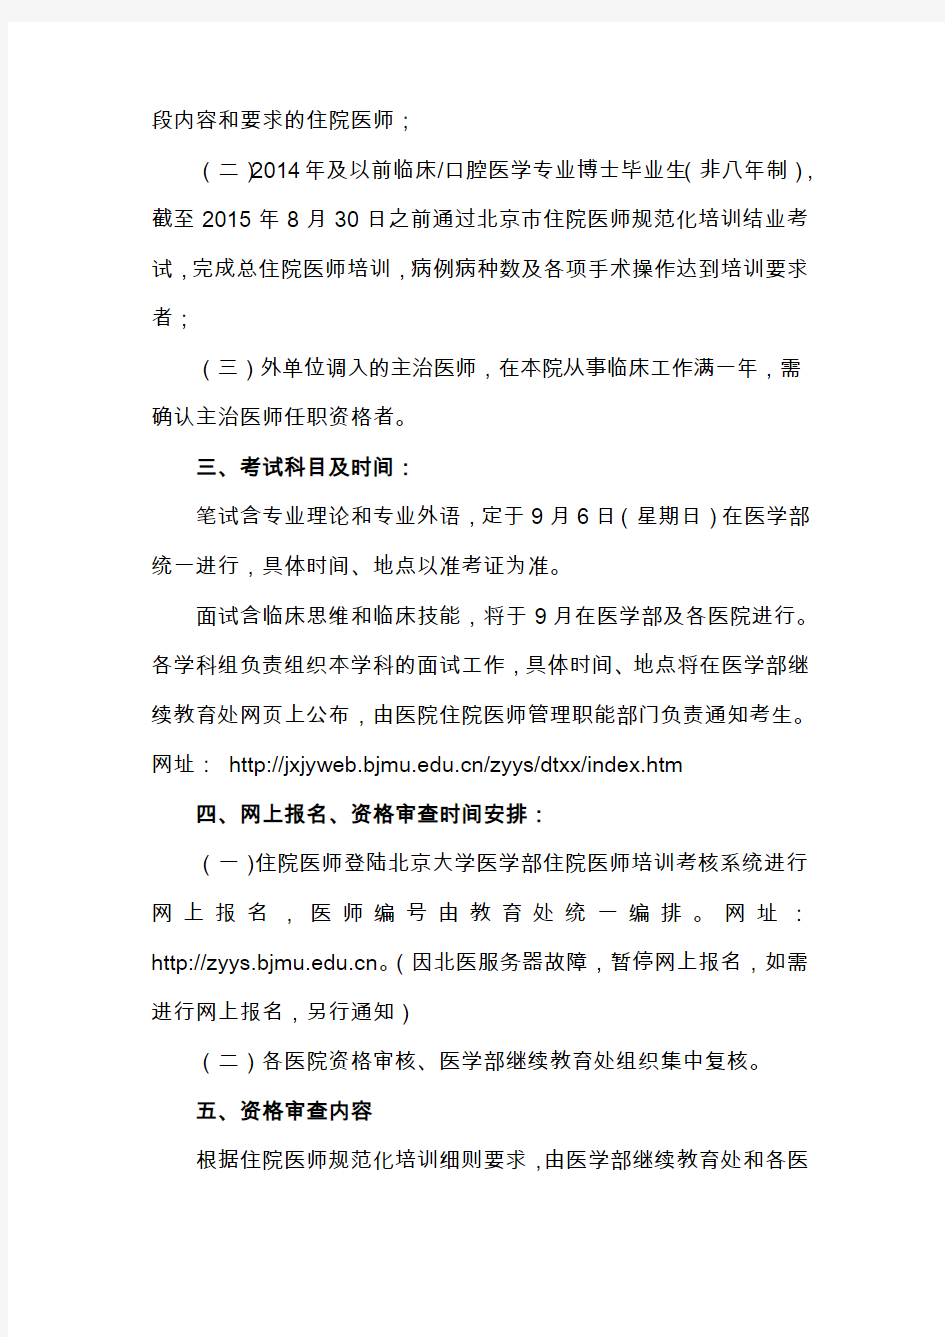 住院医师规范化培训第二阶段考试资格审核表-北京医院